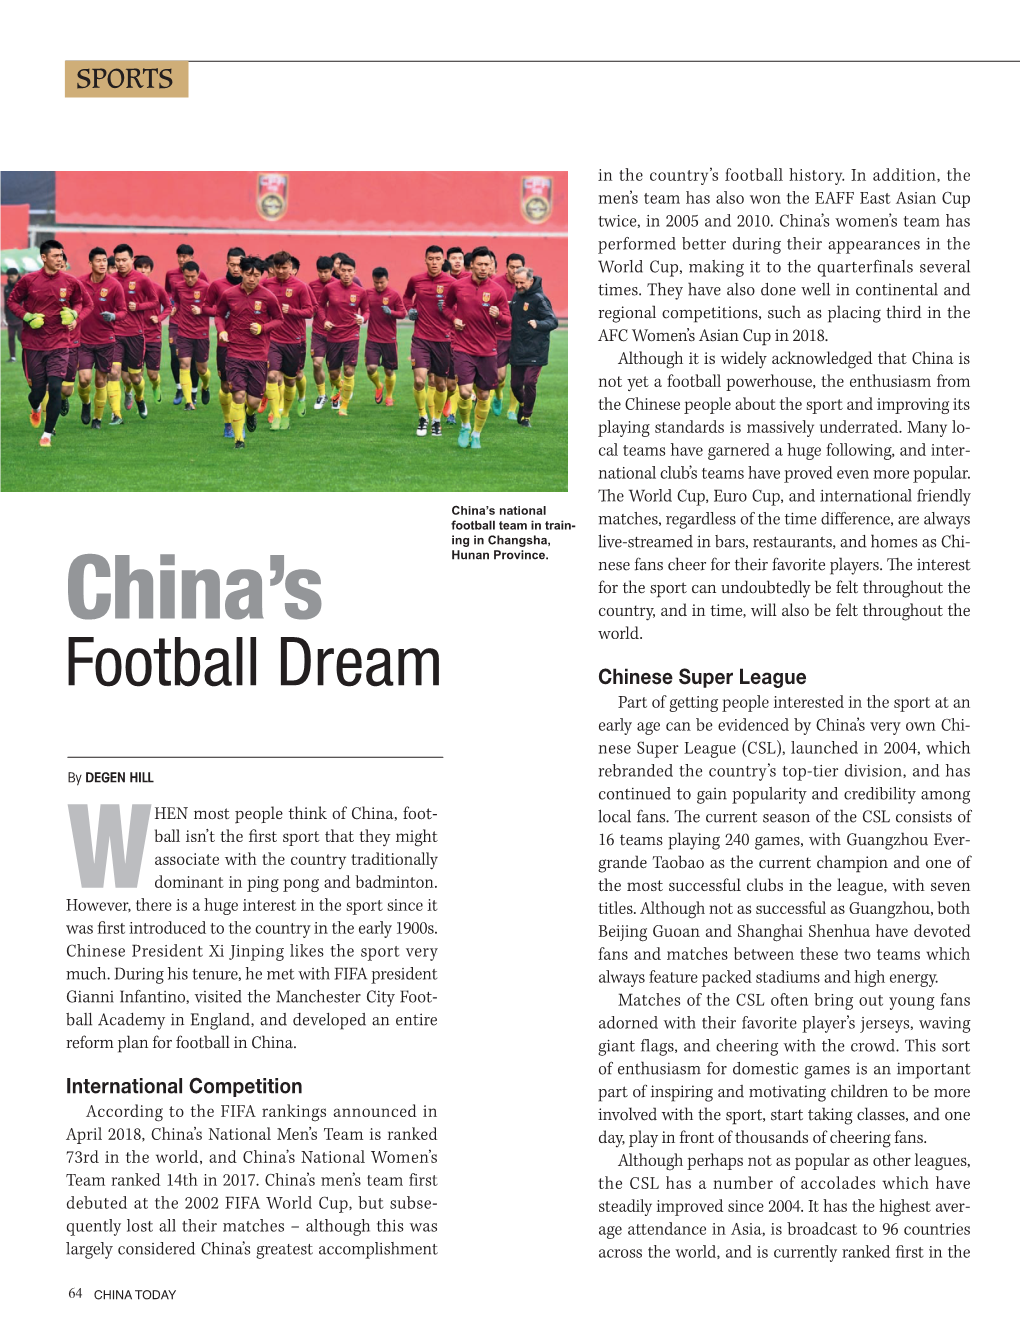 China's Football Dreams